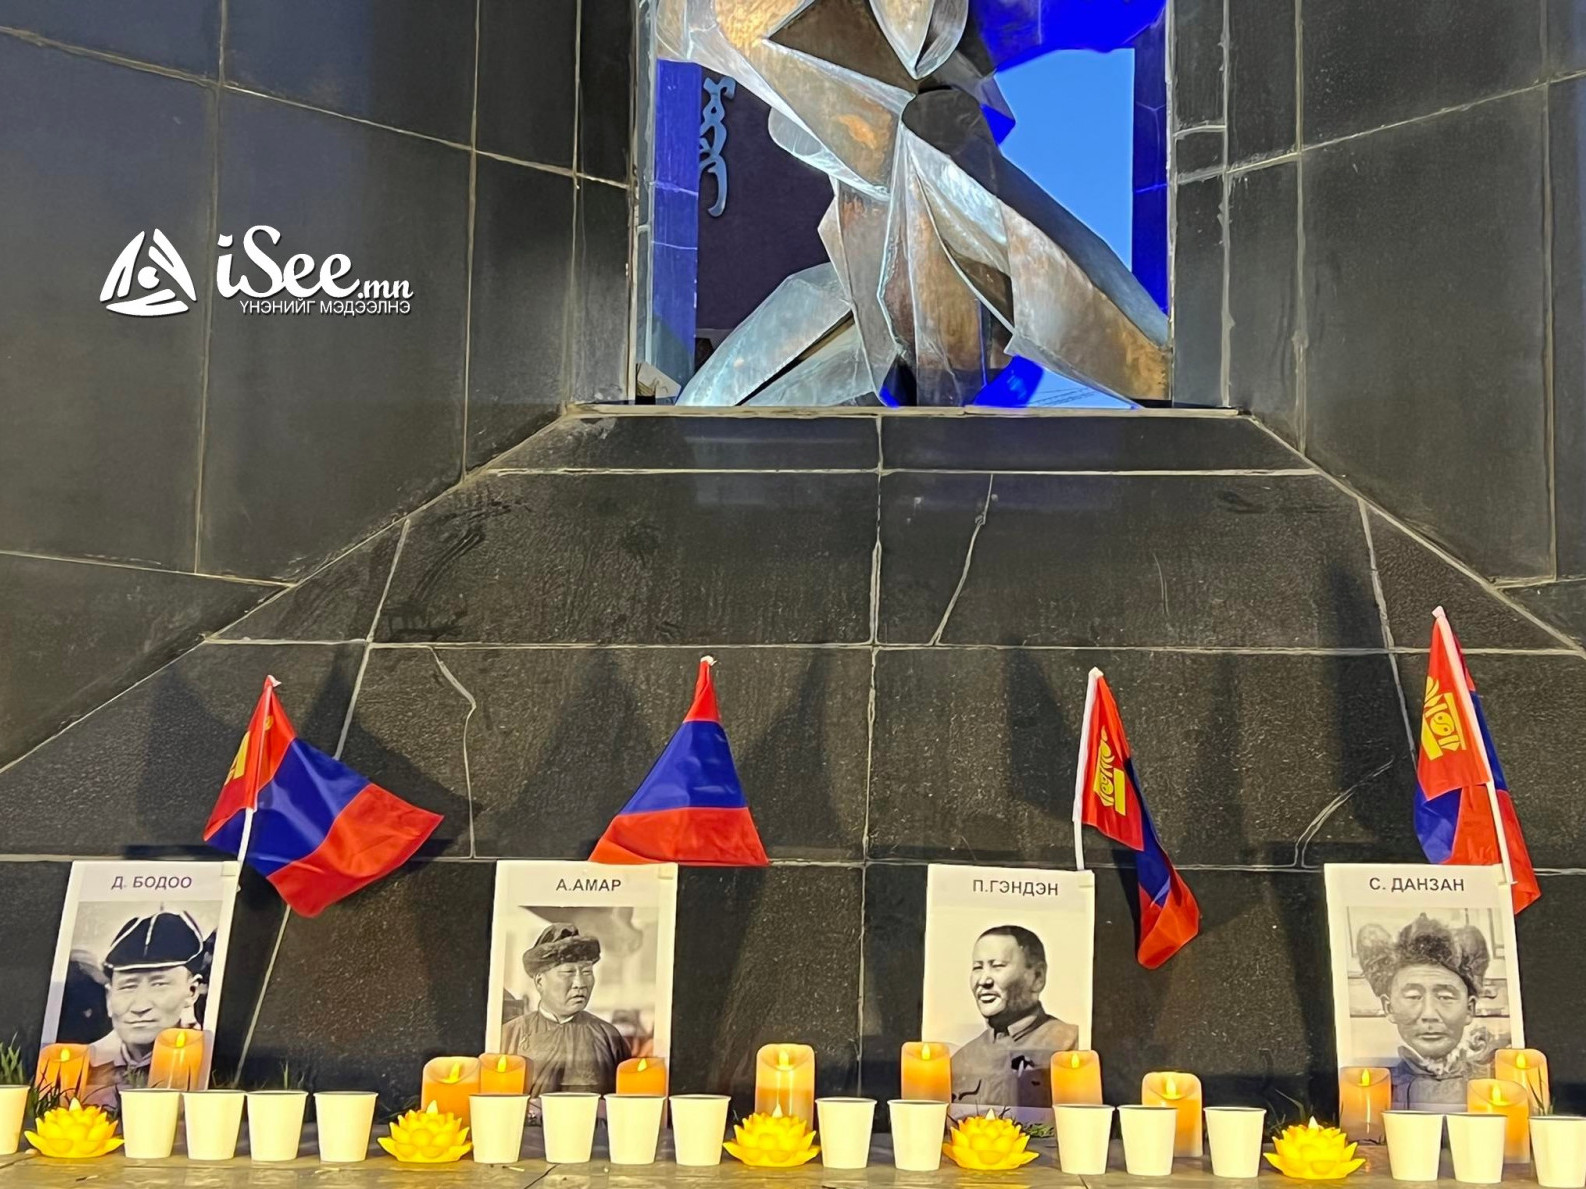 ФОТО: Москвад нас барсан Монголын Ерөнхий сайд нарт АН-ын зарим гишүүд хүндэтгэл үзүүлэв